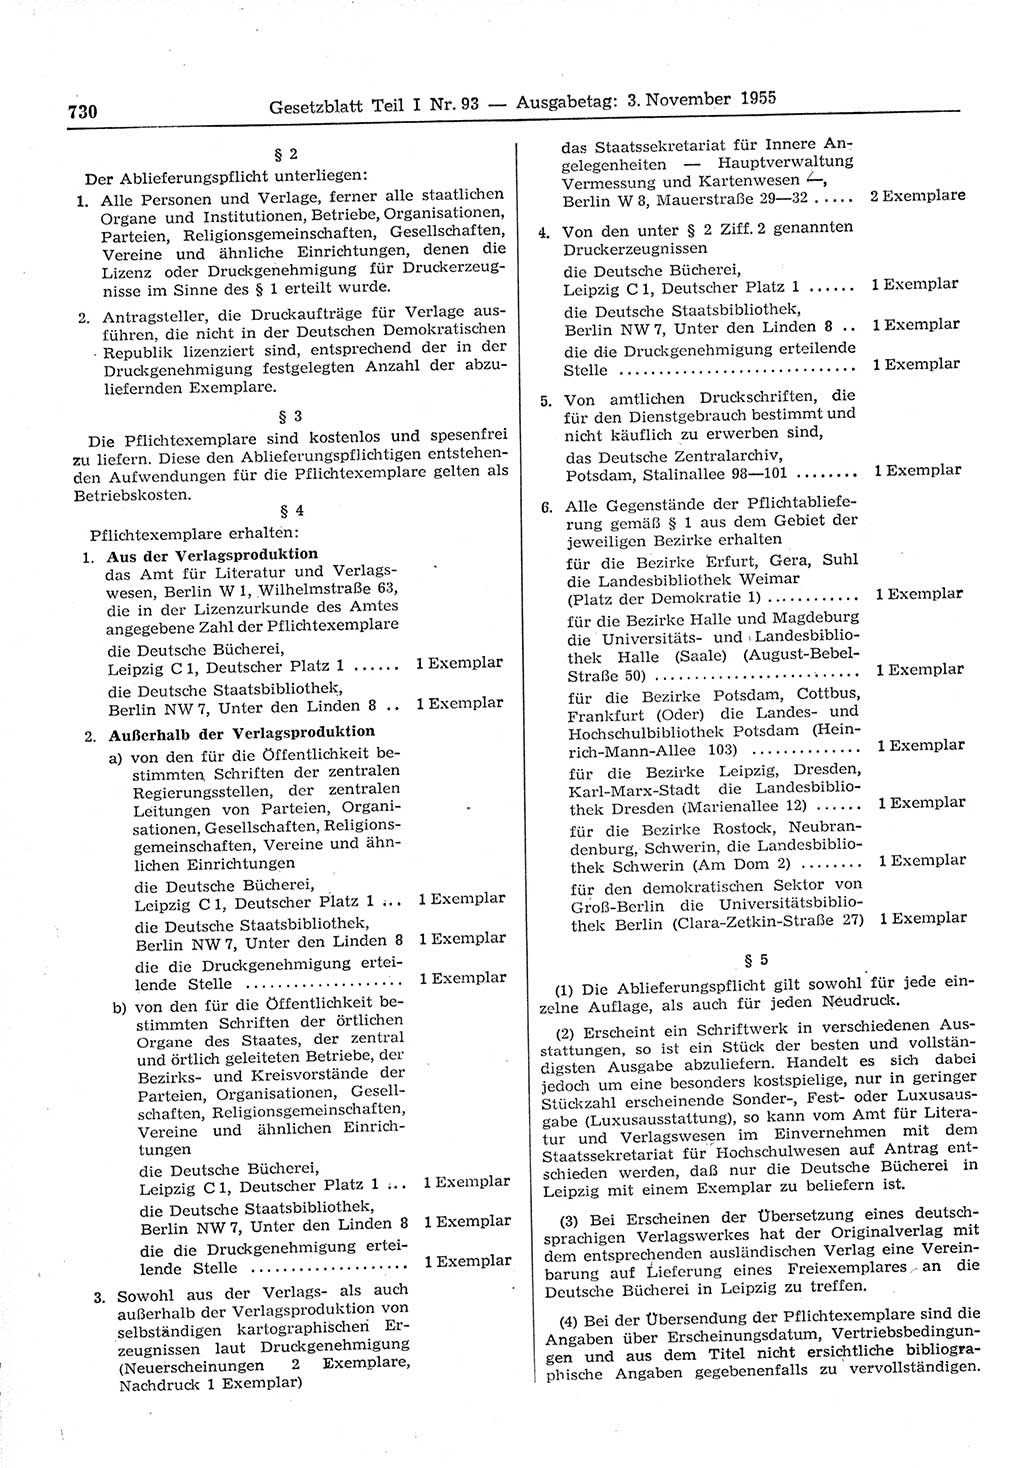 Gesetzblatt (GBl.) der Deutschen Demokratischen Republik (DDR) Teil Ⅰ 1955, Seite 730 (GBl. DDR Ⅰ 1955, S. 730)